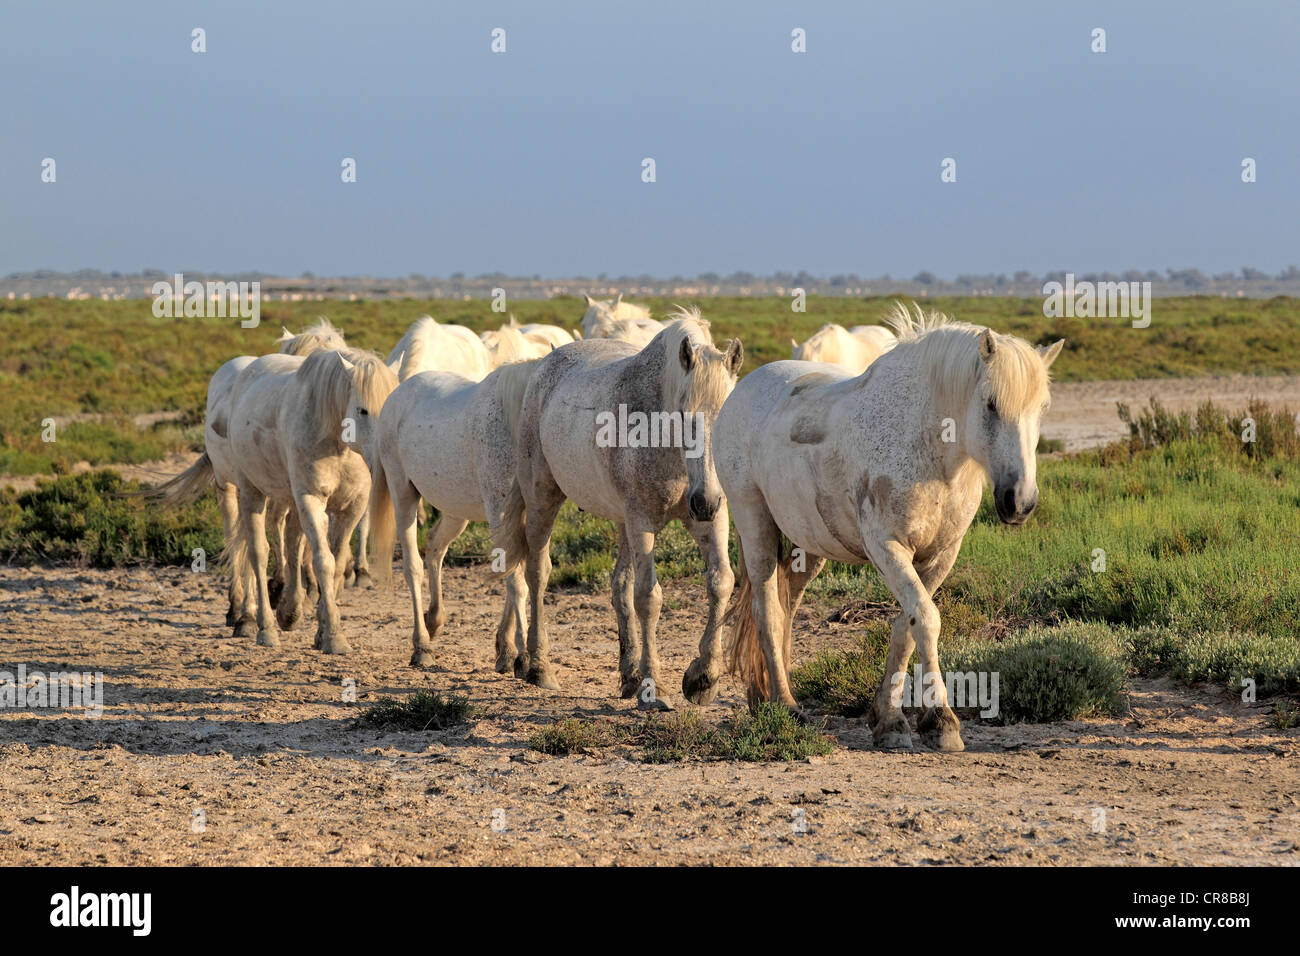 Chevaux Camargue (Equus caballus), troupeau, Saintes Maries-de-la-Mer, Camargue, France, Europe Banque D'Images